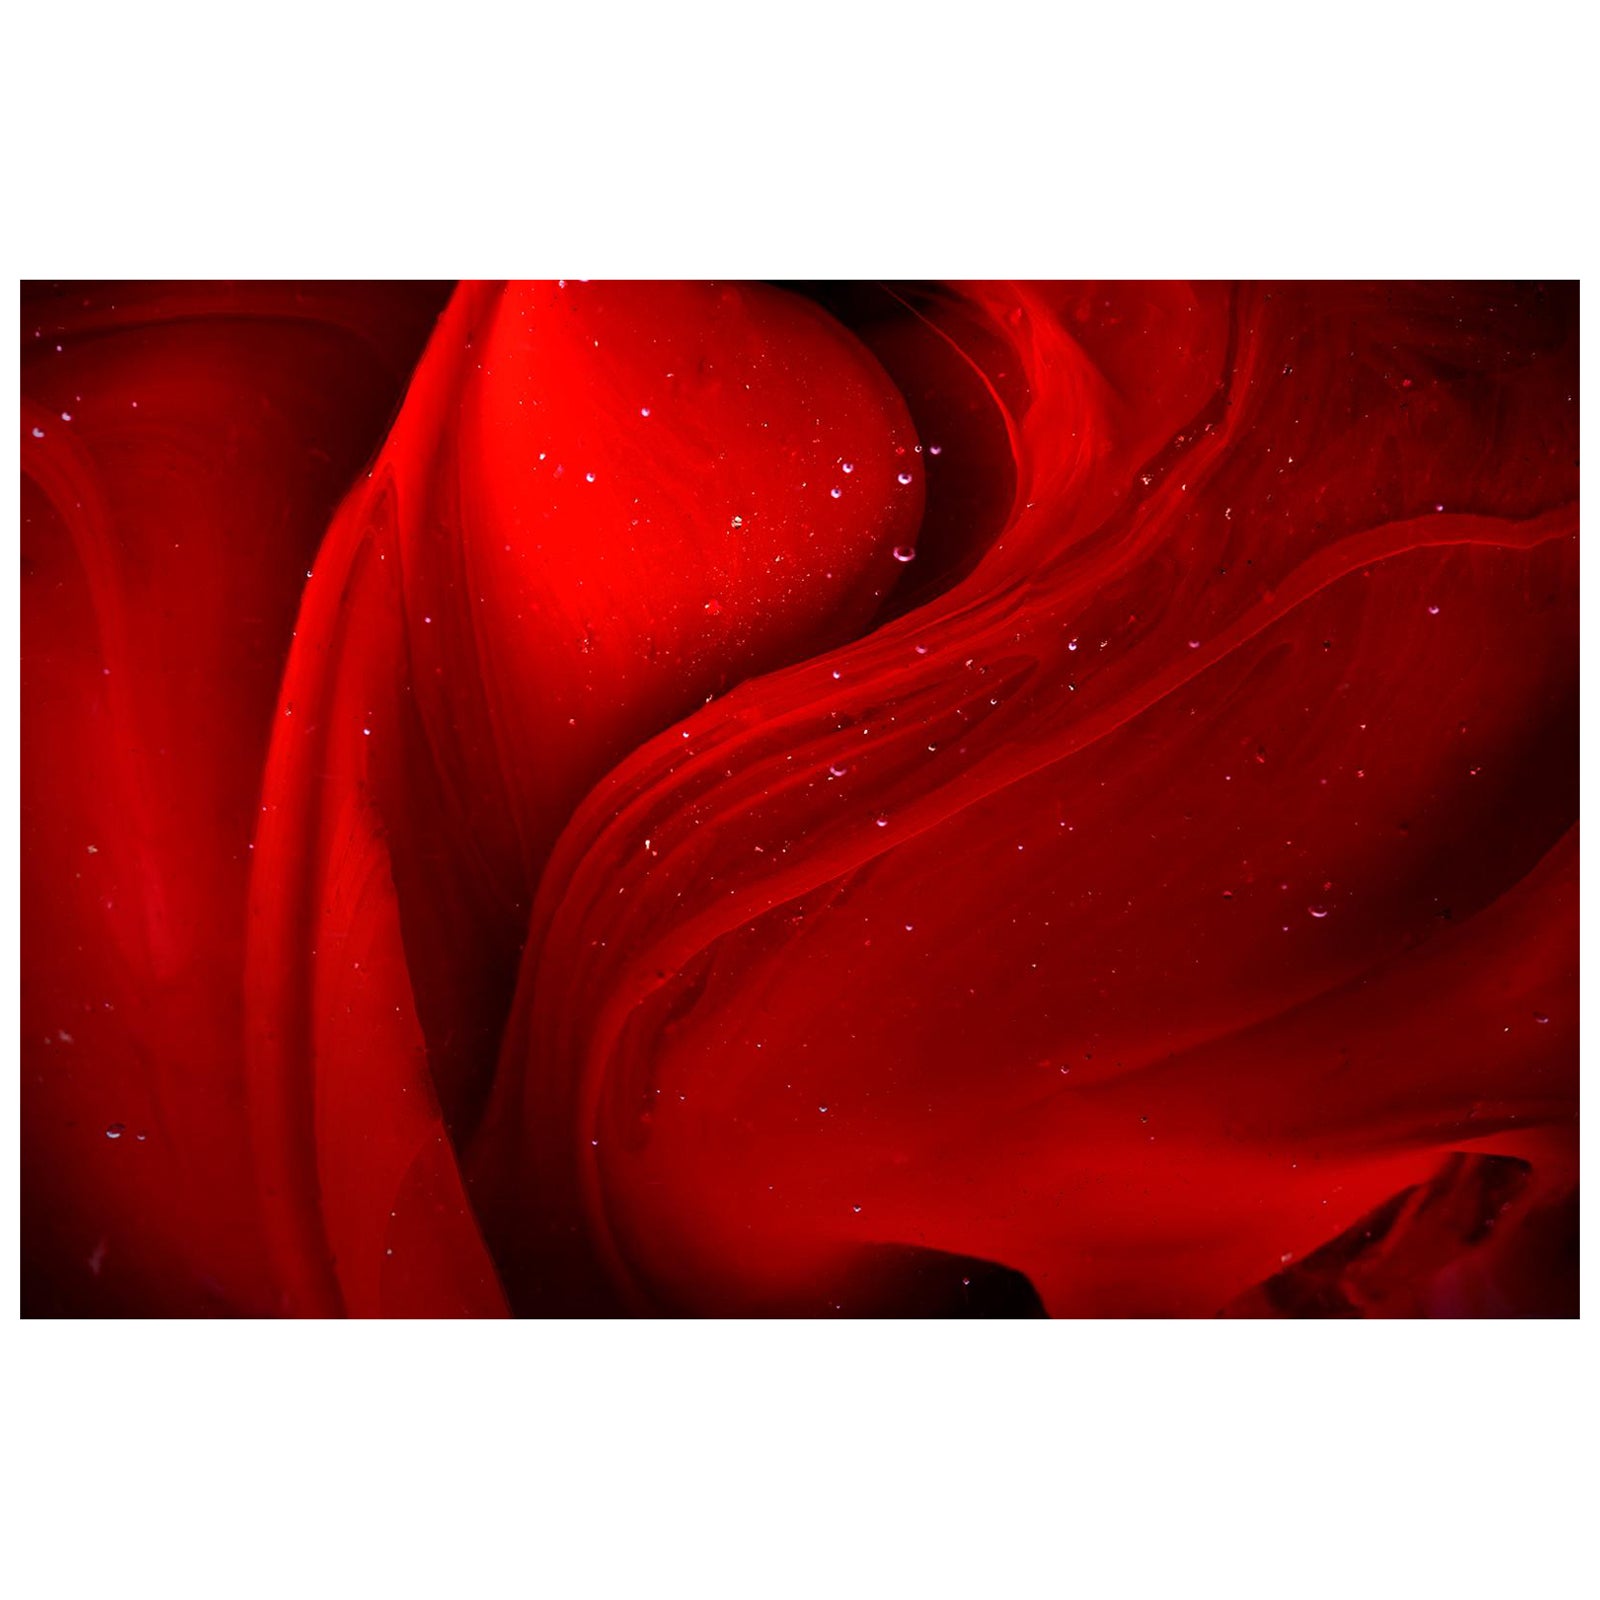 Roter Traum – Farbfoto, Druck in limitierter Auflage, abstrakt, zeitgenössisch